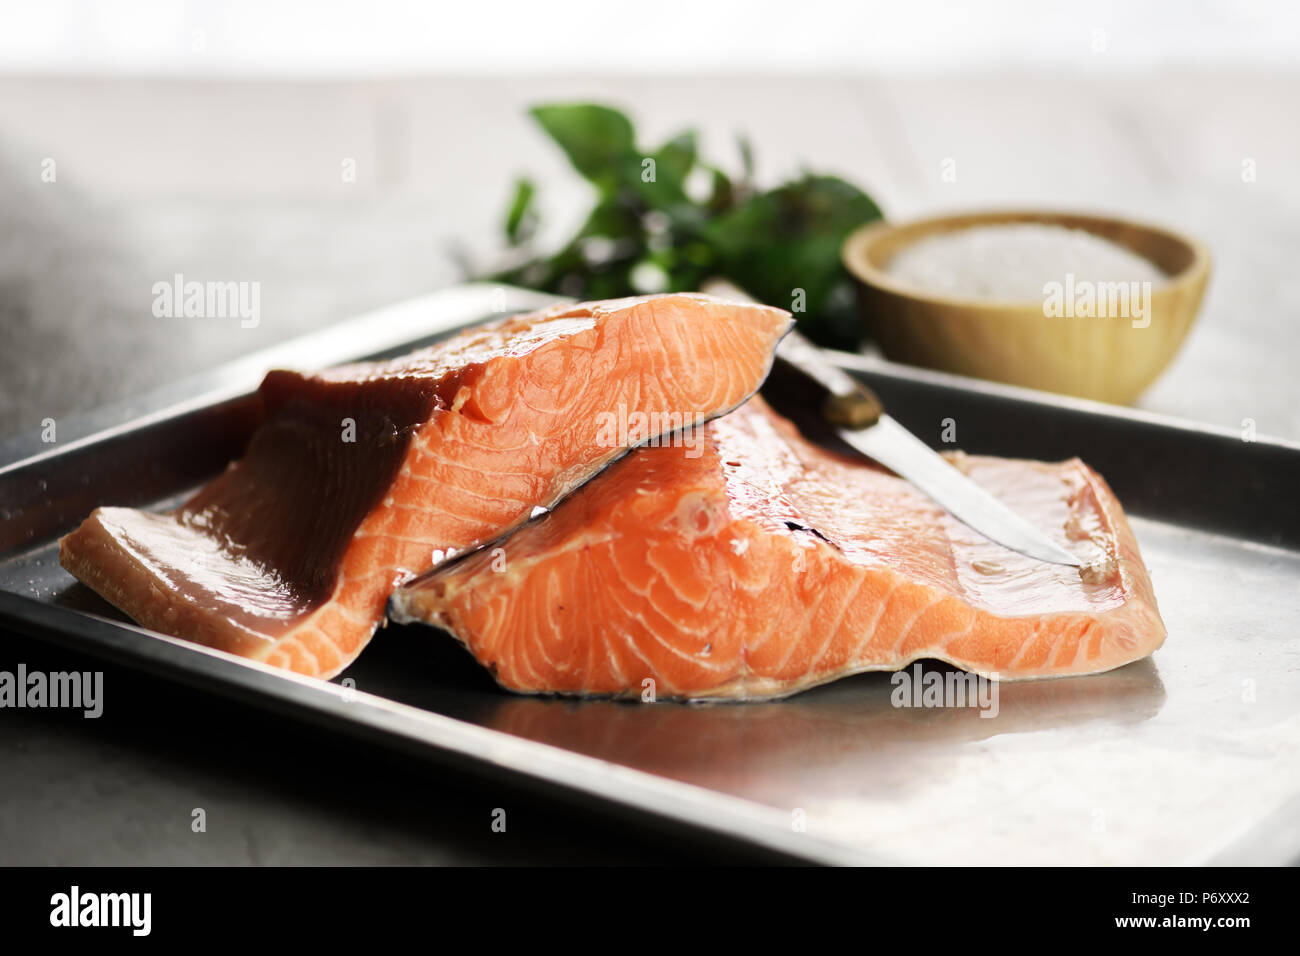 Le filet de saumon le poisson sur la plaque de métal libre Banque D'Images